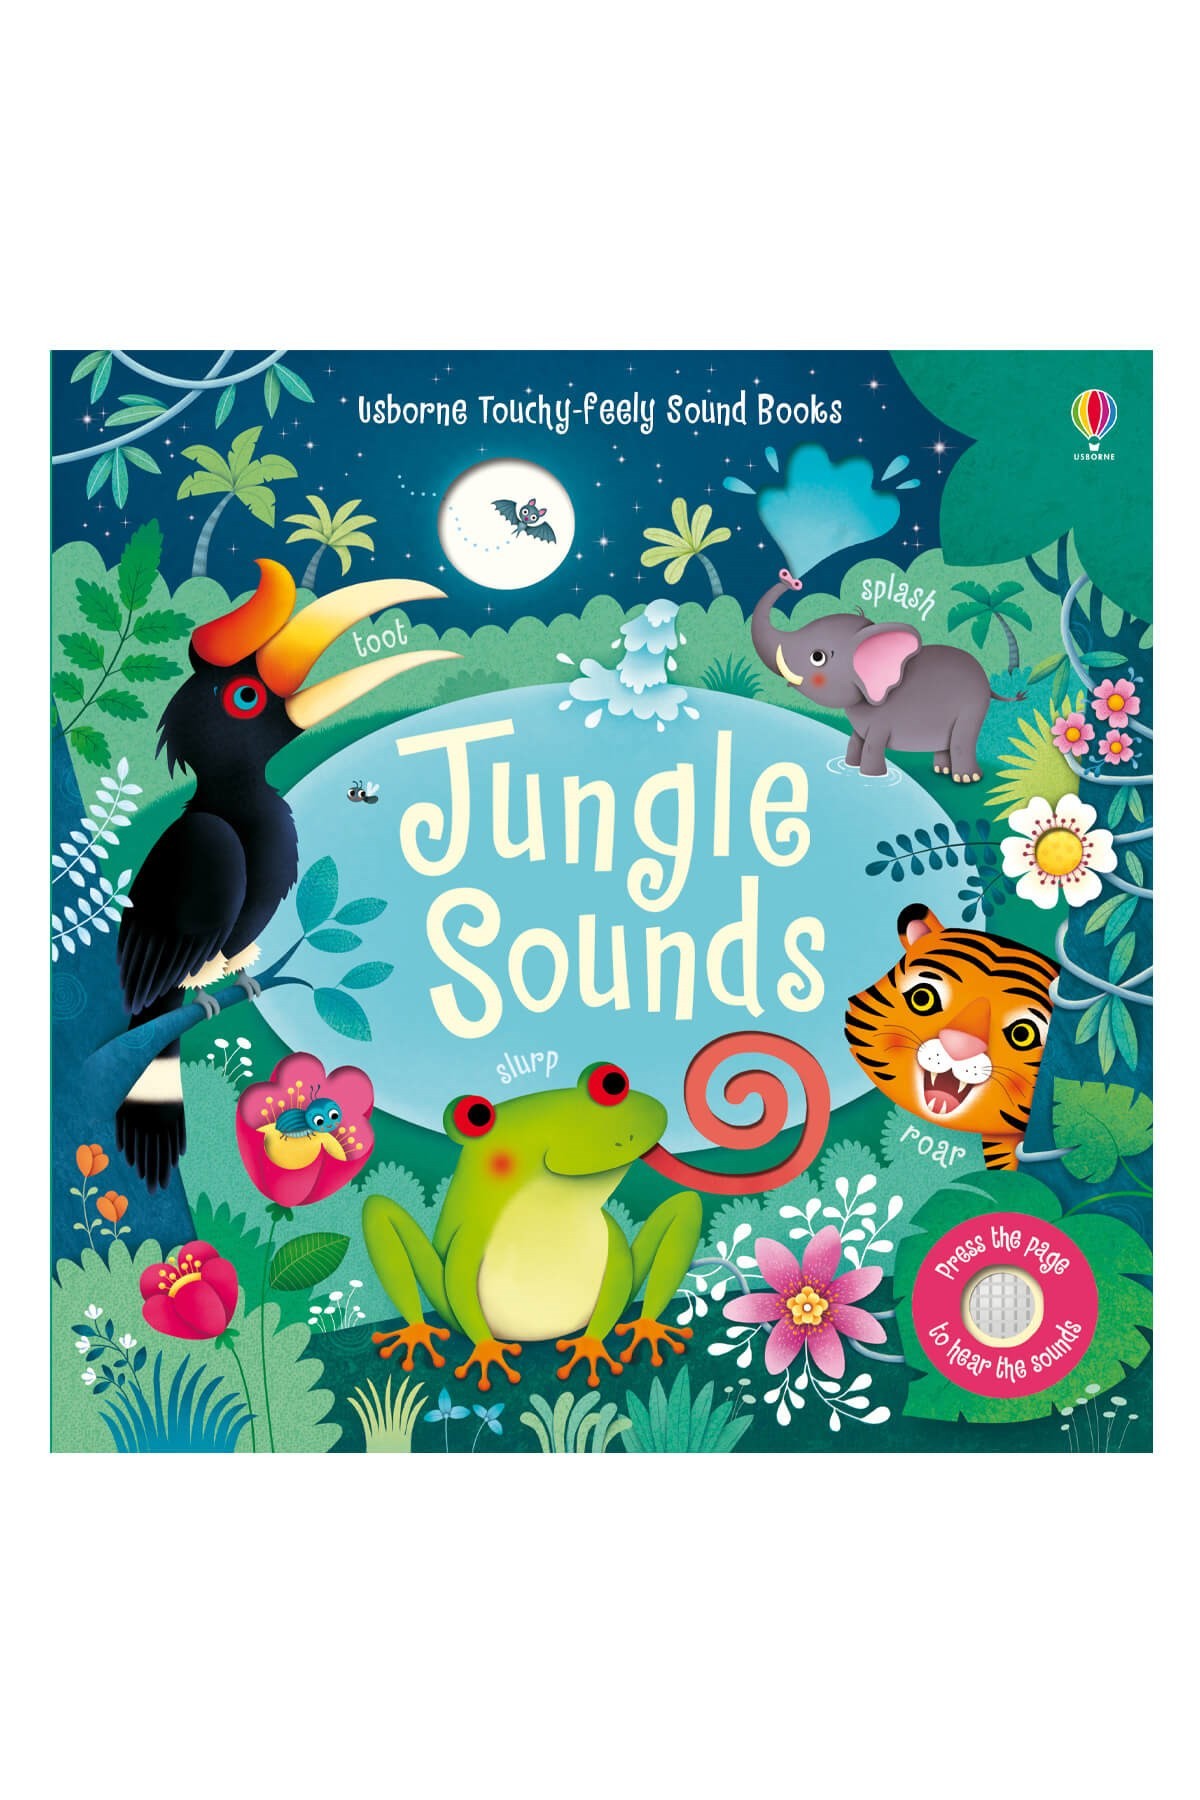 The Usborne Jungle Sounds